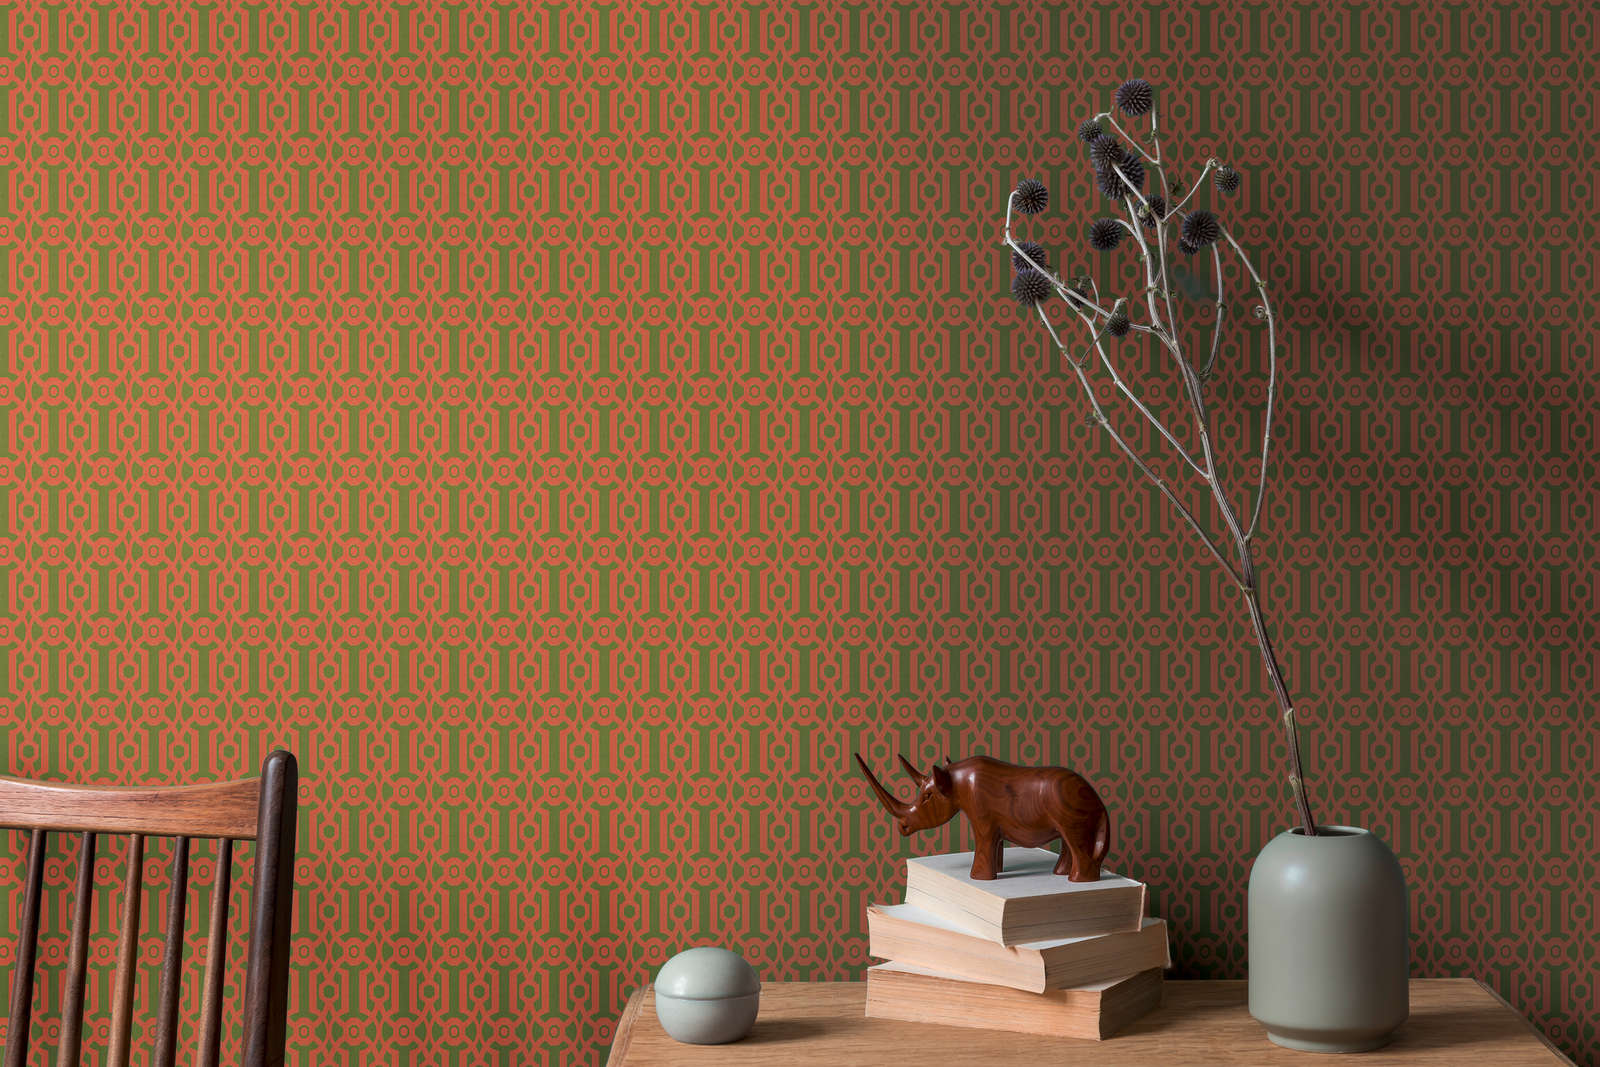             Vliesbehang met grafisch patroon in Engelse stijl - oranje, groen
        